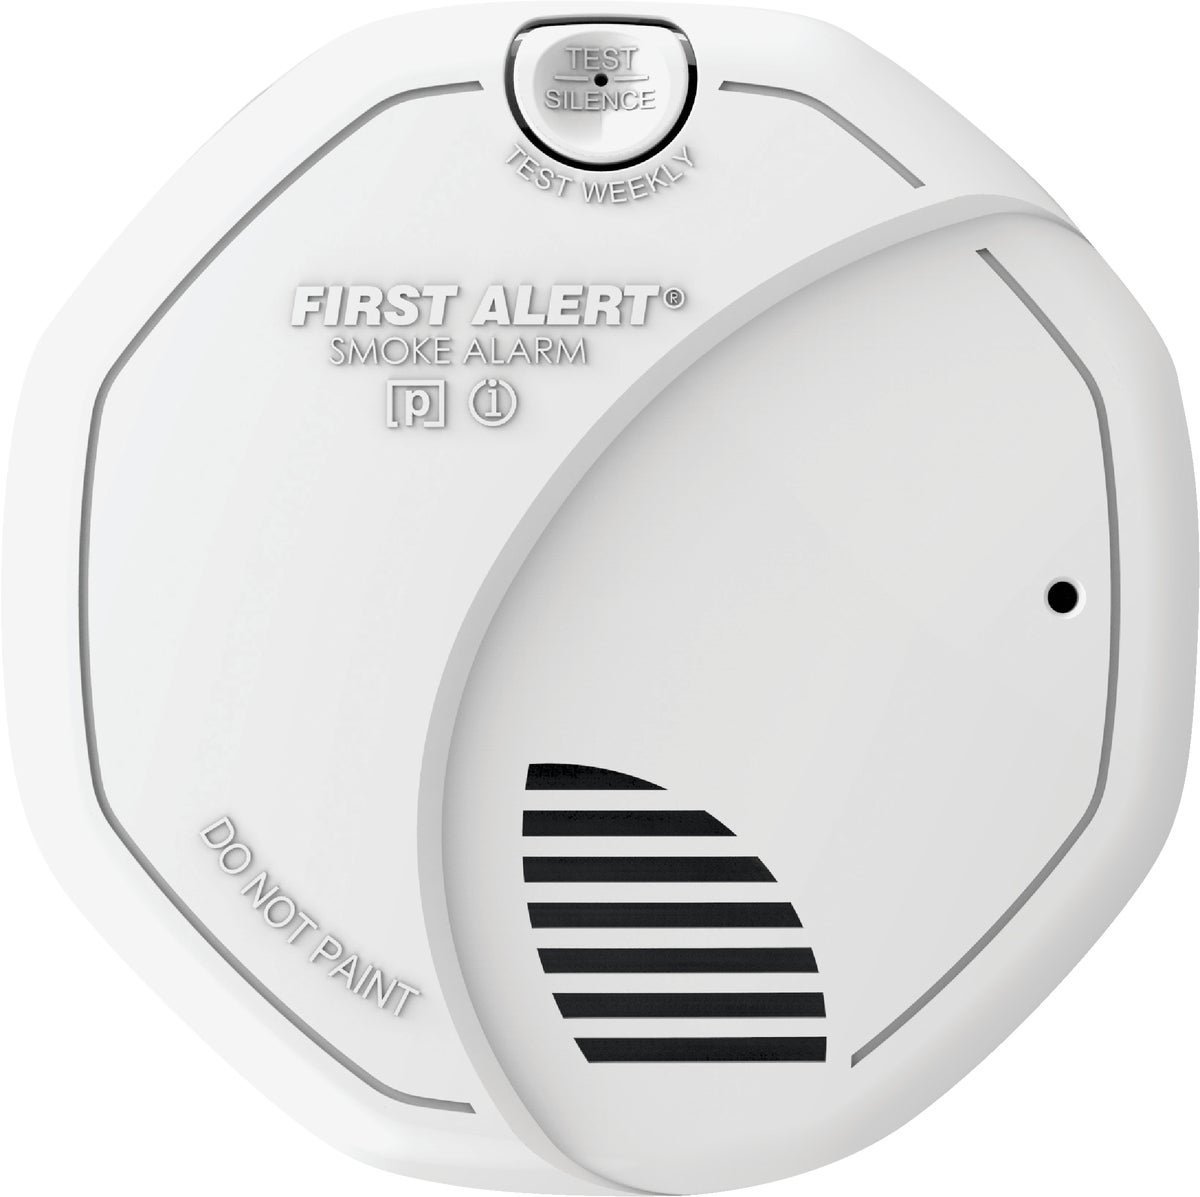 Device 01. Датчик дыма электронный Smoke Alarm. Датчик задымления Dahua Smoke Sensing. GS-SMK-R-8f датчик дыма. Детекторы двойной технологии 180°.